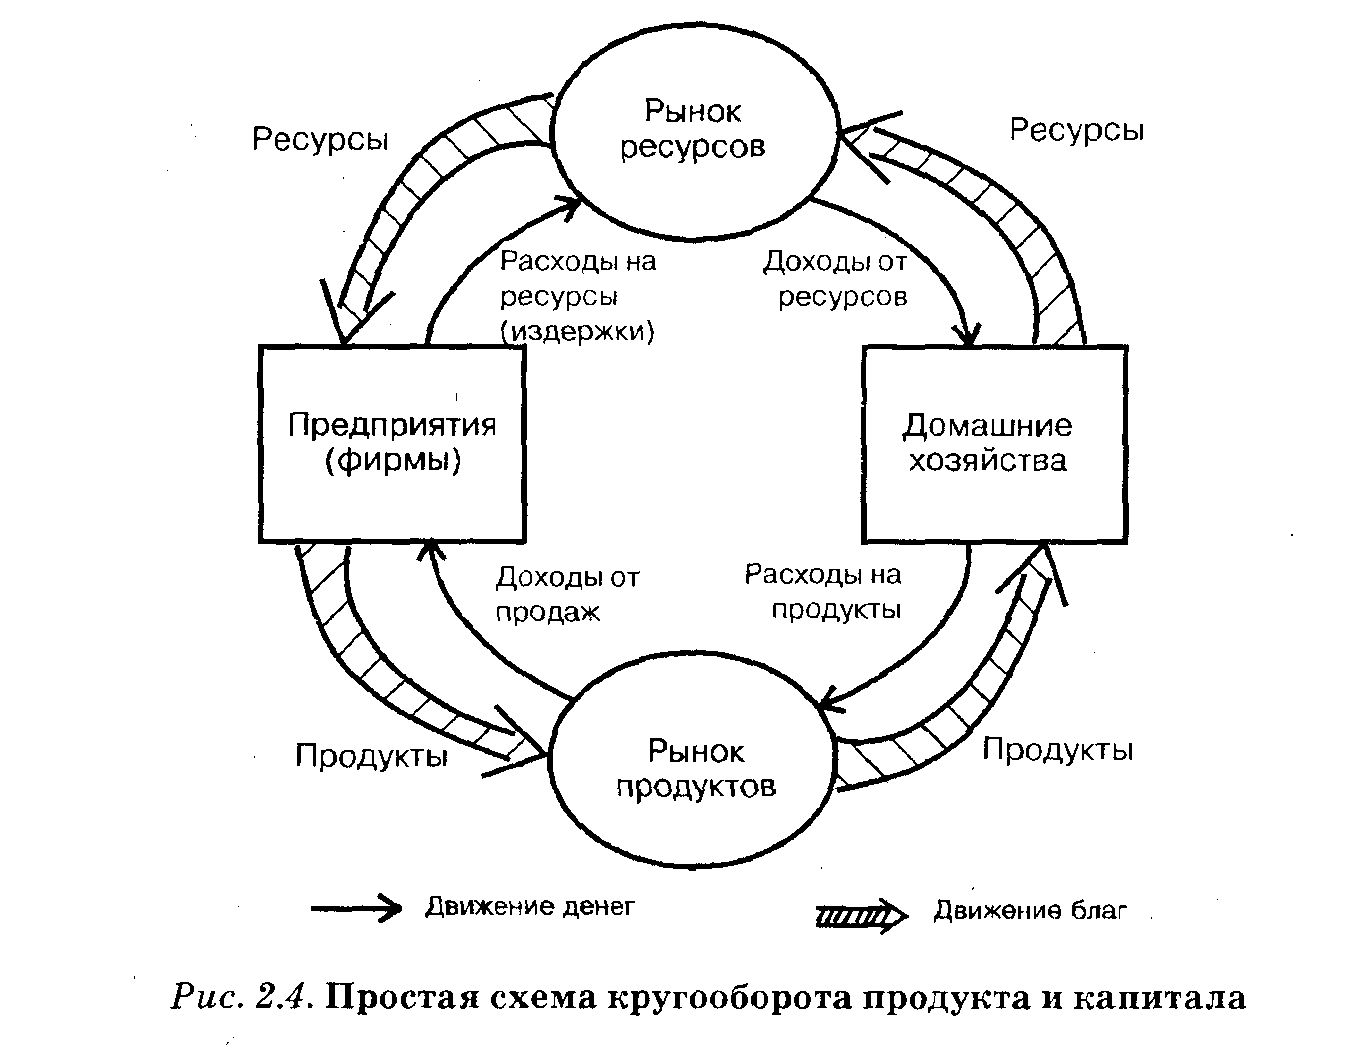 Взаимодействие рынков в экономике. Схема кругооборота продукта и дохода (капитала). Простая схема кругооборота продукта и капитала. Простая схема экономического кругооборота. Экономическая модель схема кругооборота потоков.